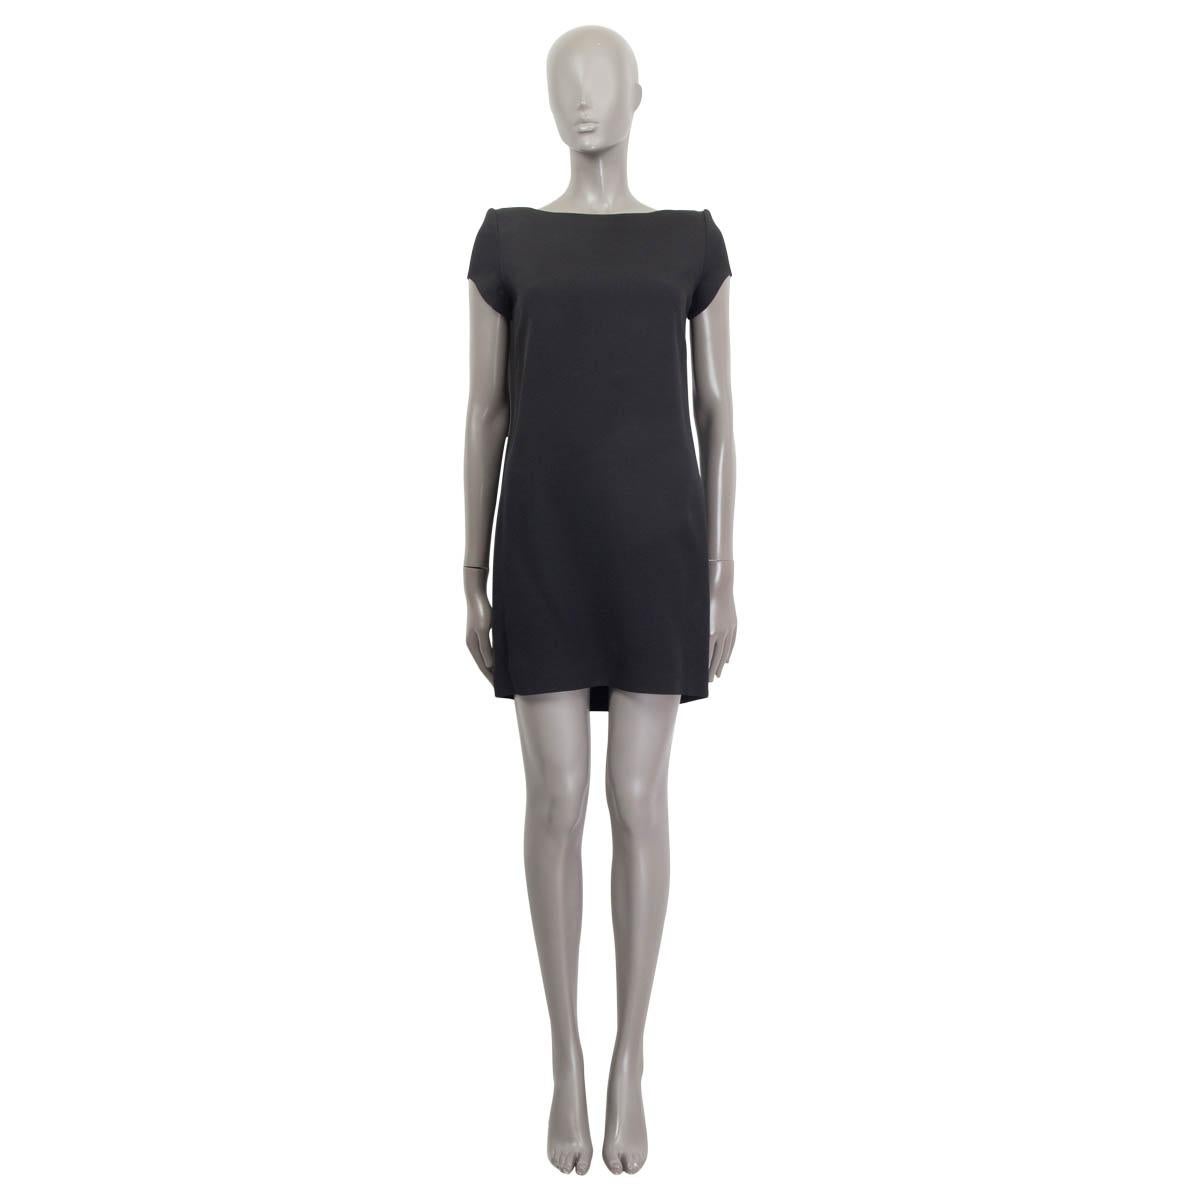 100% authentisches Saint Laurent Kleid mit kurzen Ärmeln aus schwarzem Acetat (50%), Viskose (37%) und Seide (13%). Mit gepolsterten Schultern. Wird mit einem verdeckten Reißverschluss und einem Haken auf der Rückseite geöffnet. Gefüttert mit